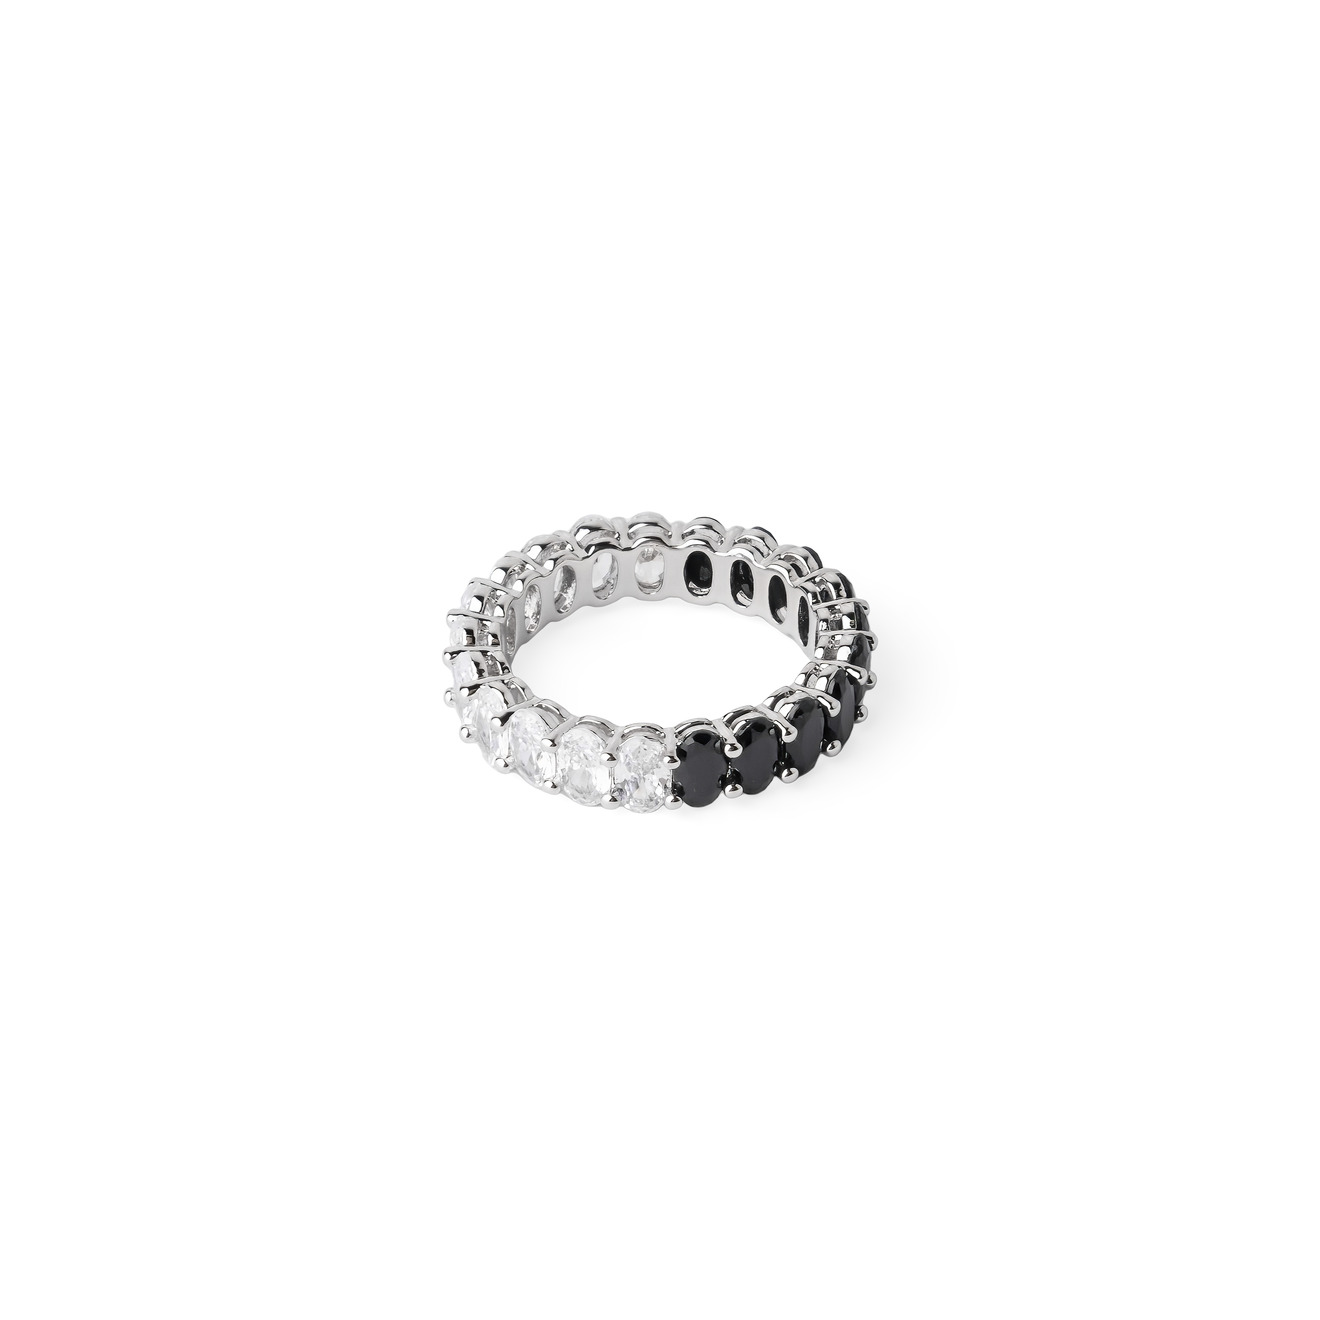 Herald Percy Серебристое кольцо с черными и белыми кристаллами herald percy серебристое кольцо из сердец с белыми и зелеными кристаллами